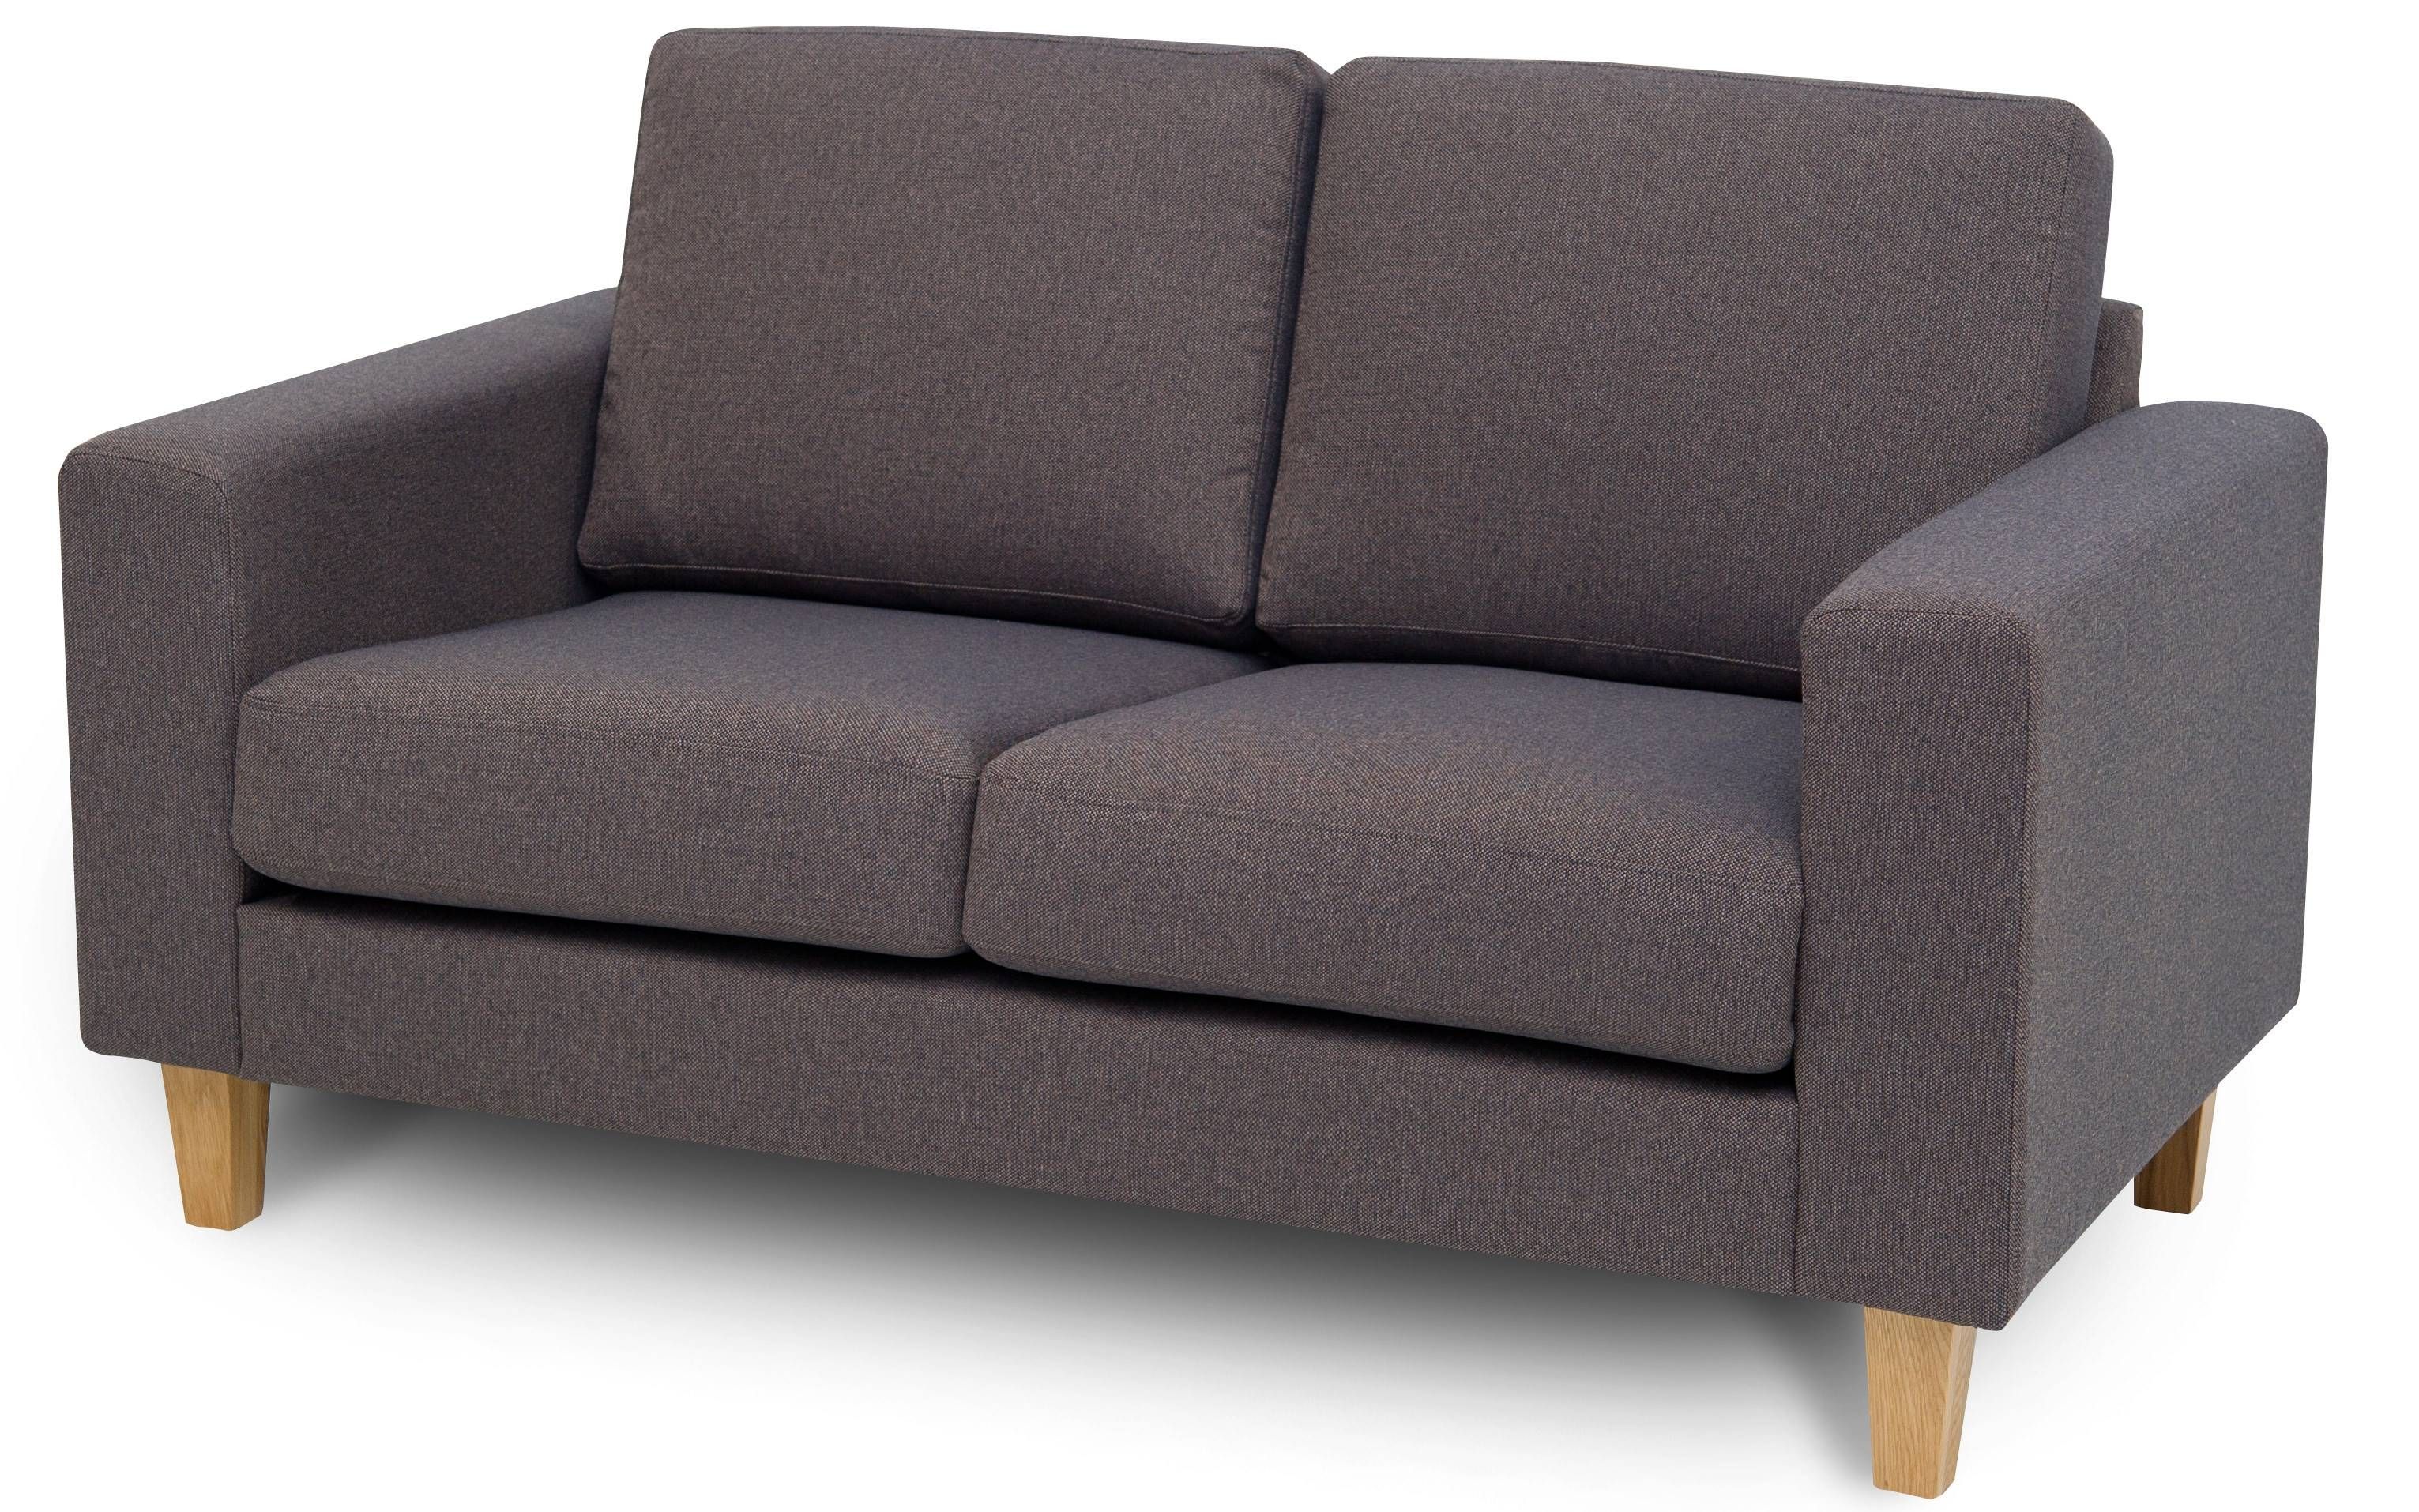 Dalton Two Seater Sofa | Designer Sofas| Buy At Kontenta Inside Two Seater Sofas (Photo 10 of 30)